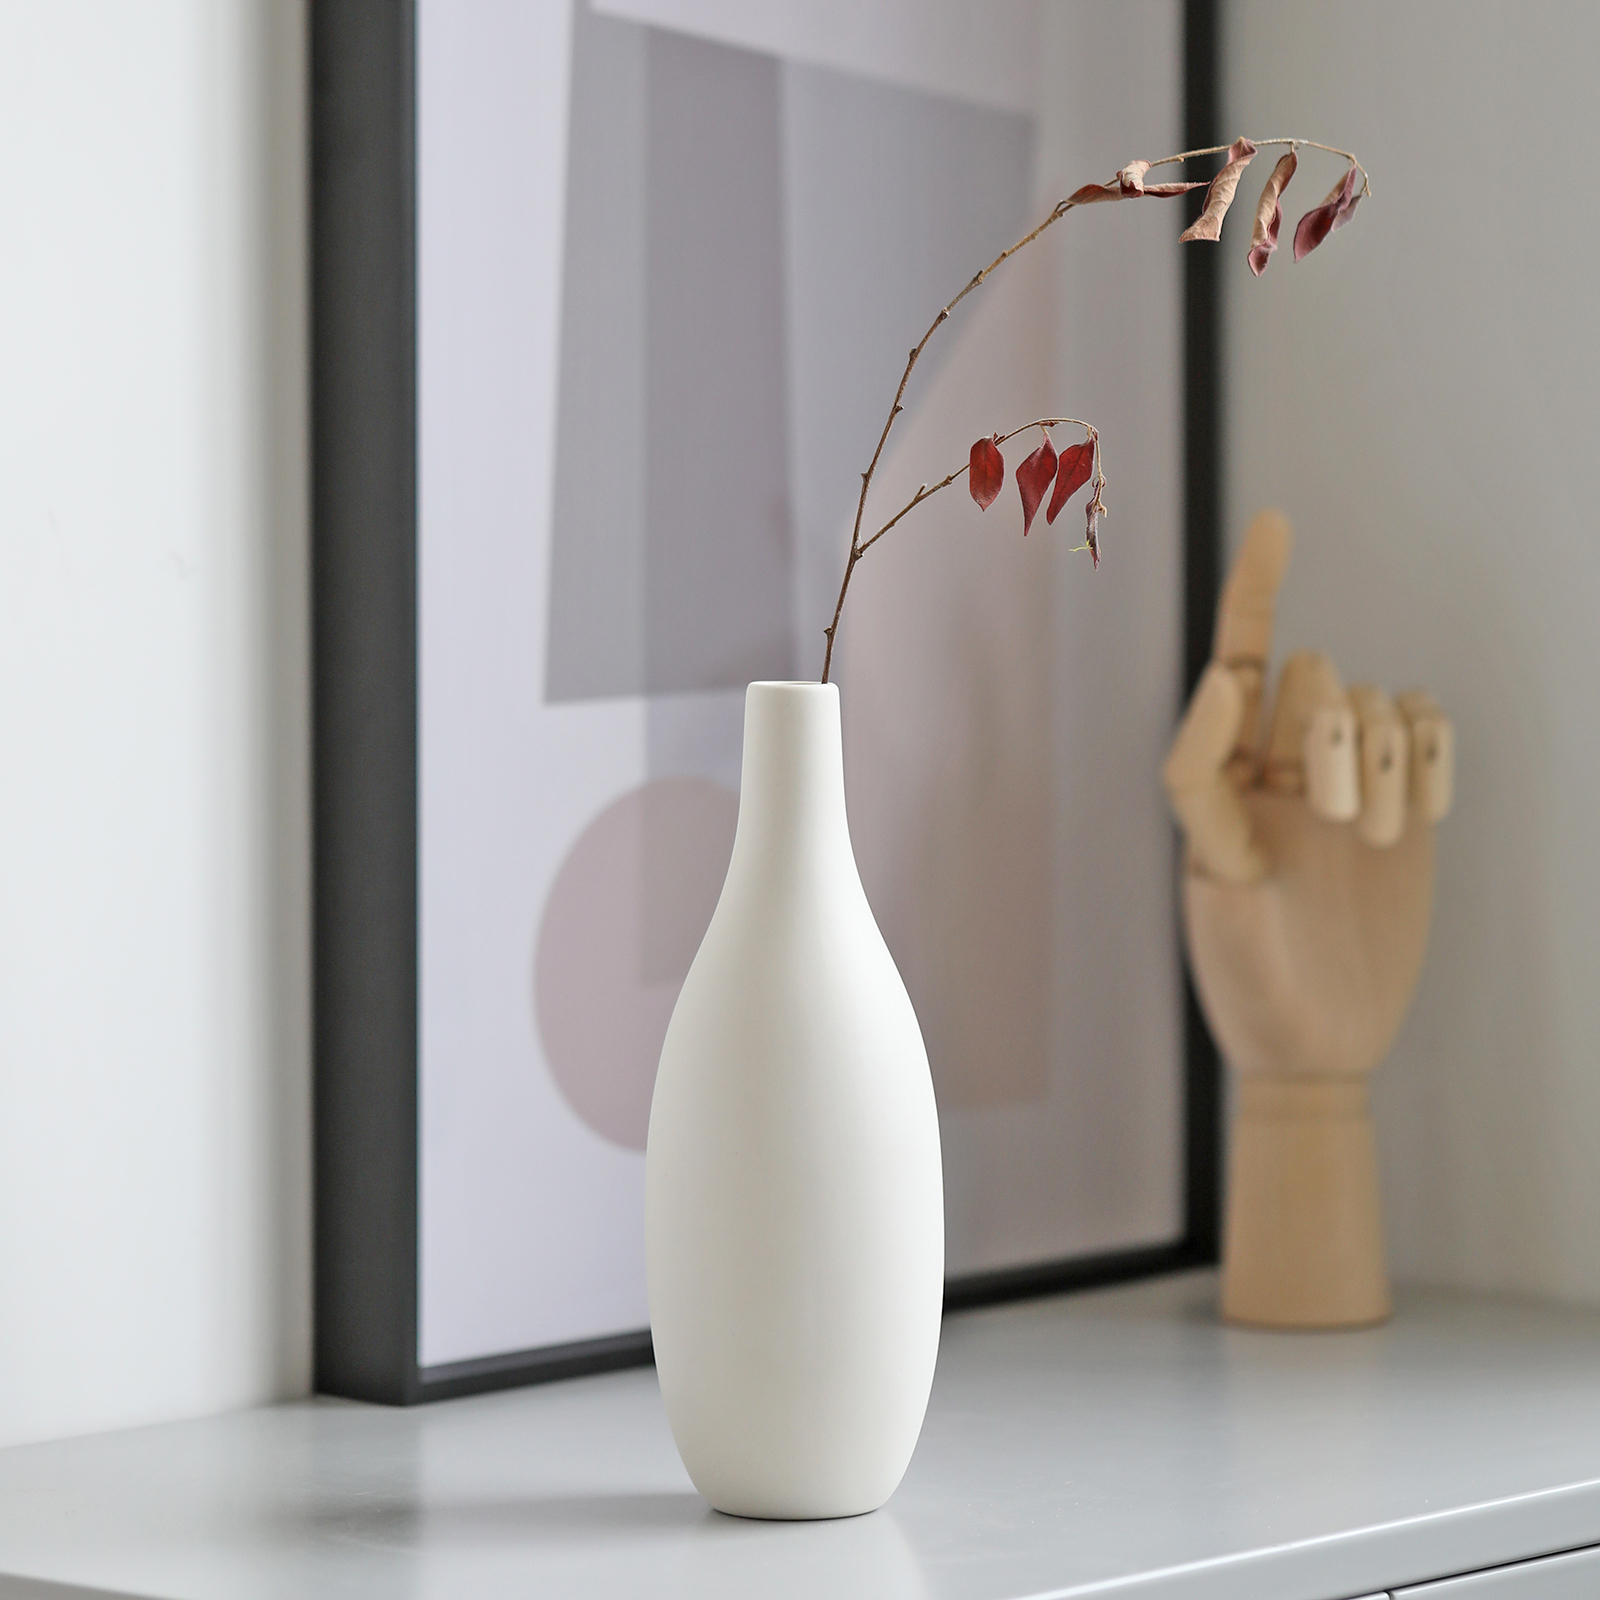 侘寂風陶瓷花瓶簡約現代風格適合客廳臥室書房等空間擺放